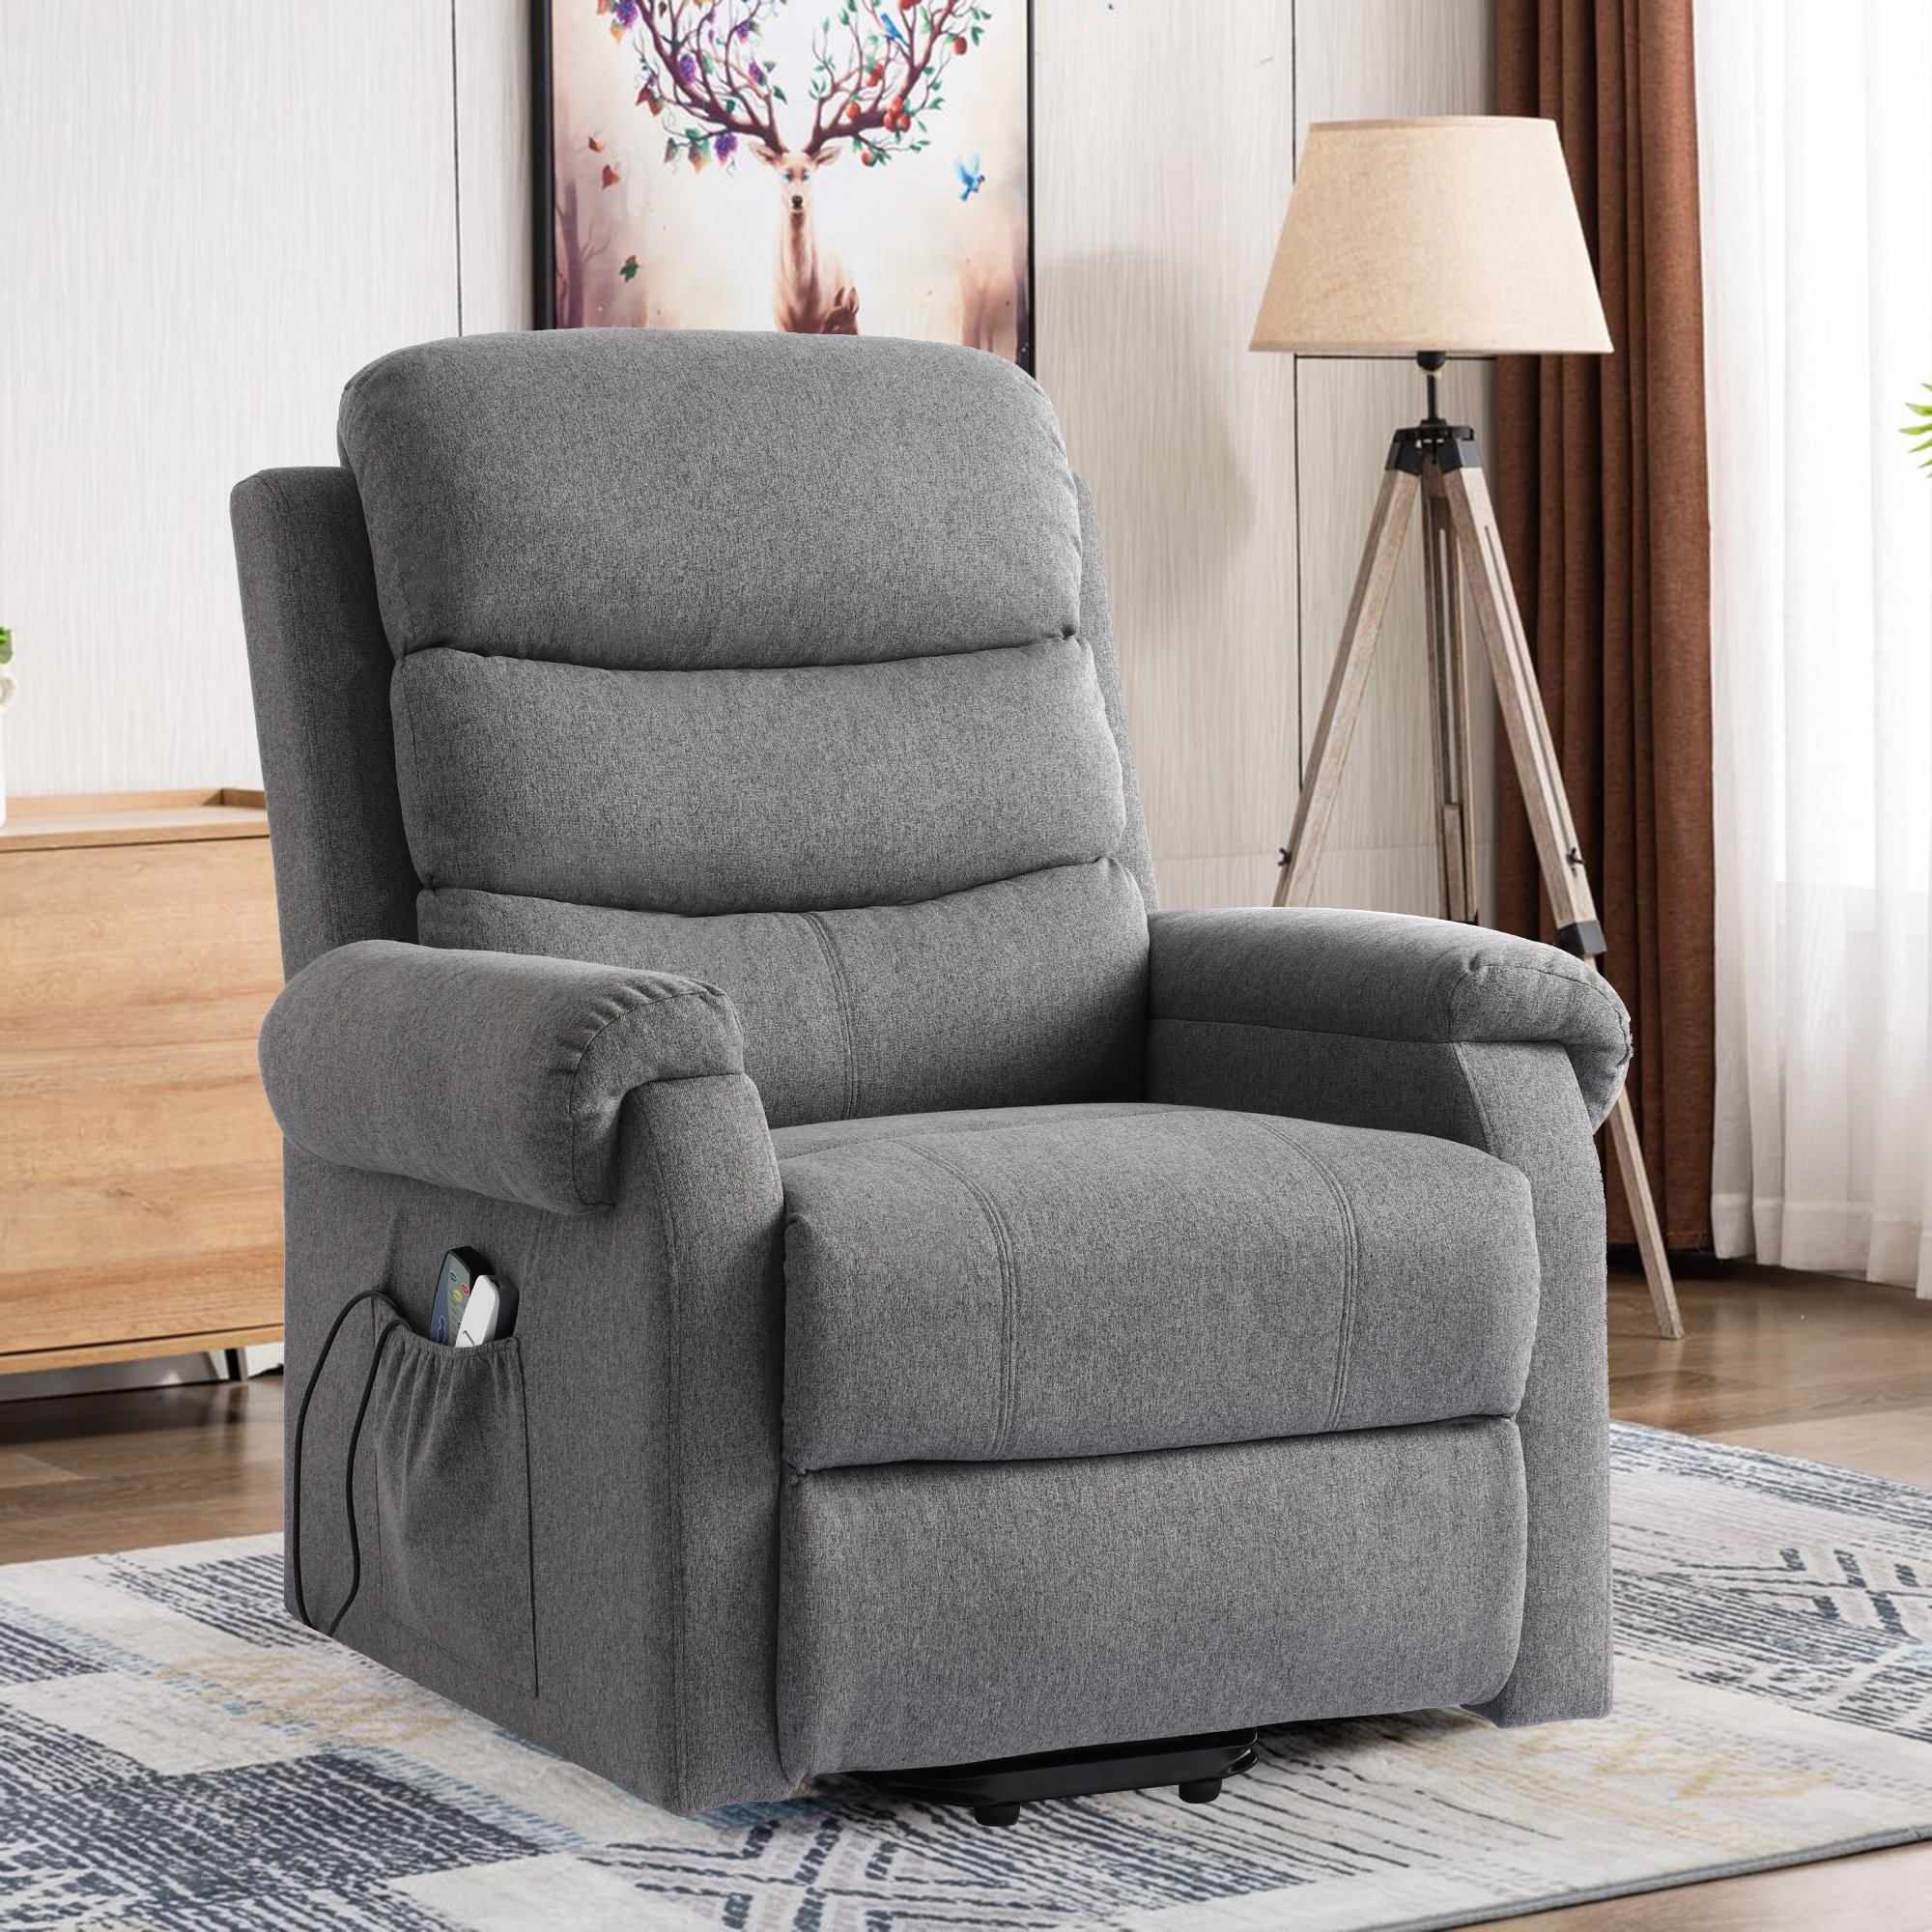 https://assets.wfcdn.com/im/68568532/compr-r85/2313/231348212/upholstered-power-reclining-heated-massage-chair.jpg